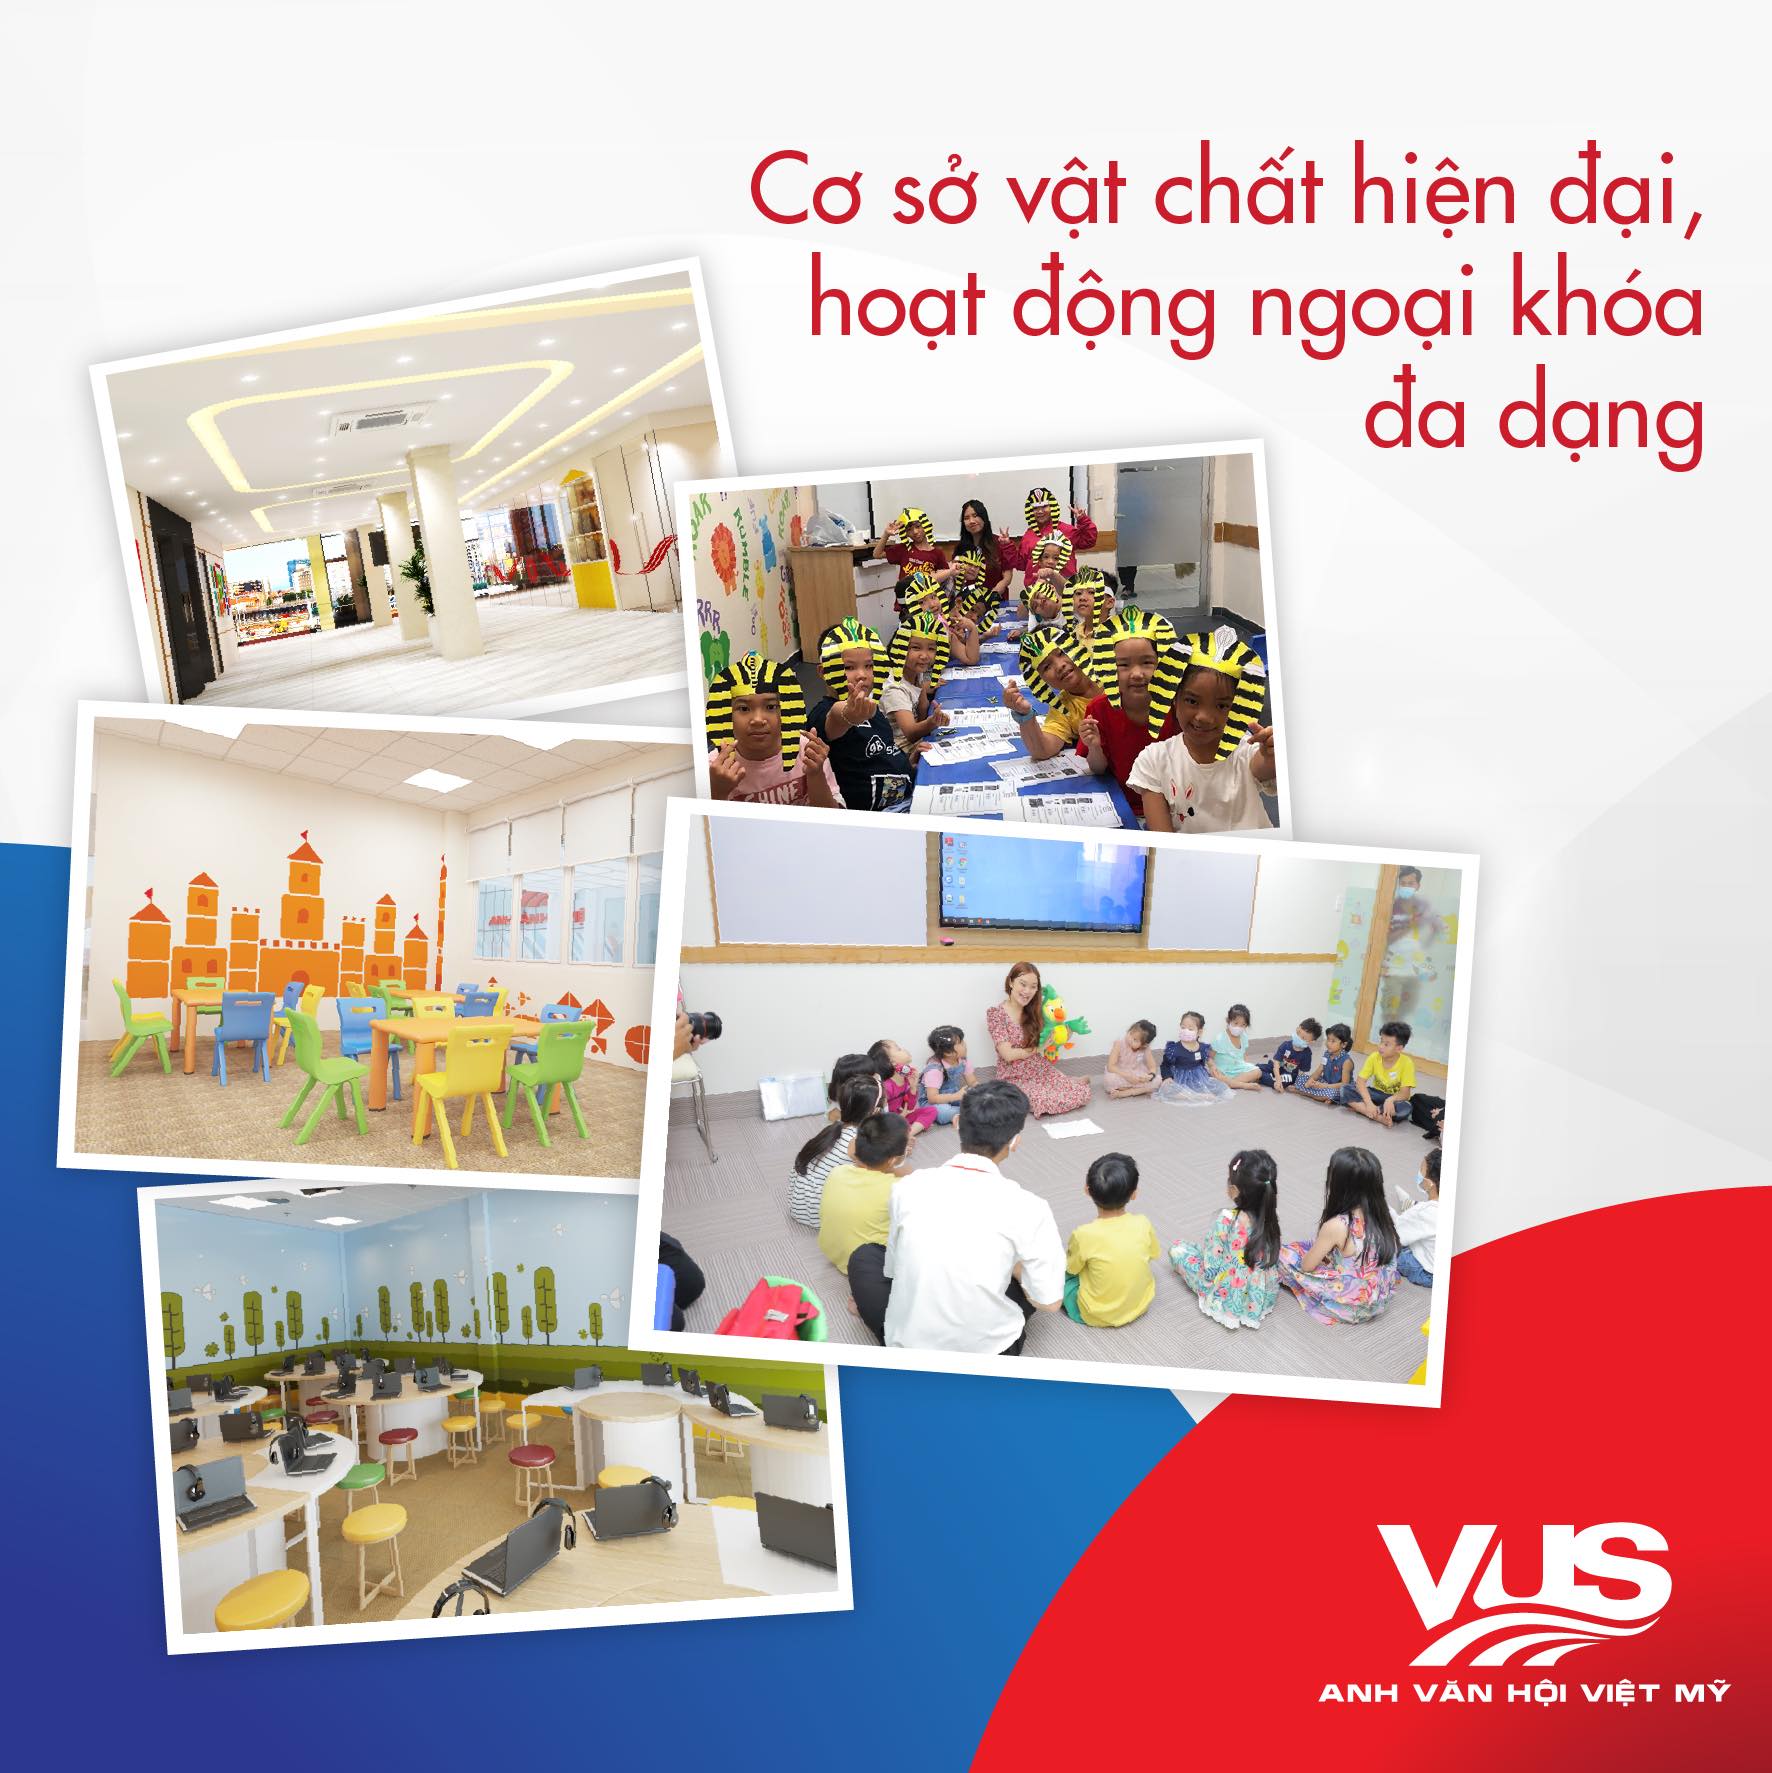 VUS - Anh văn Hội Việt Mỹ ảnh 2